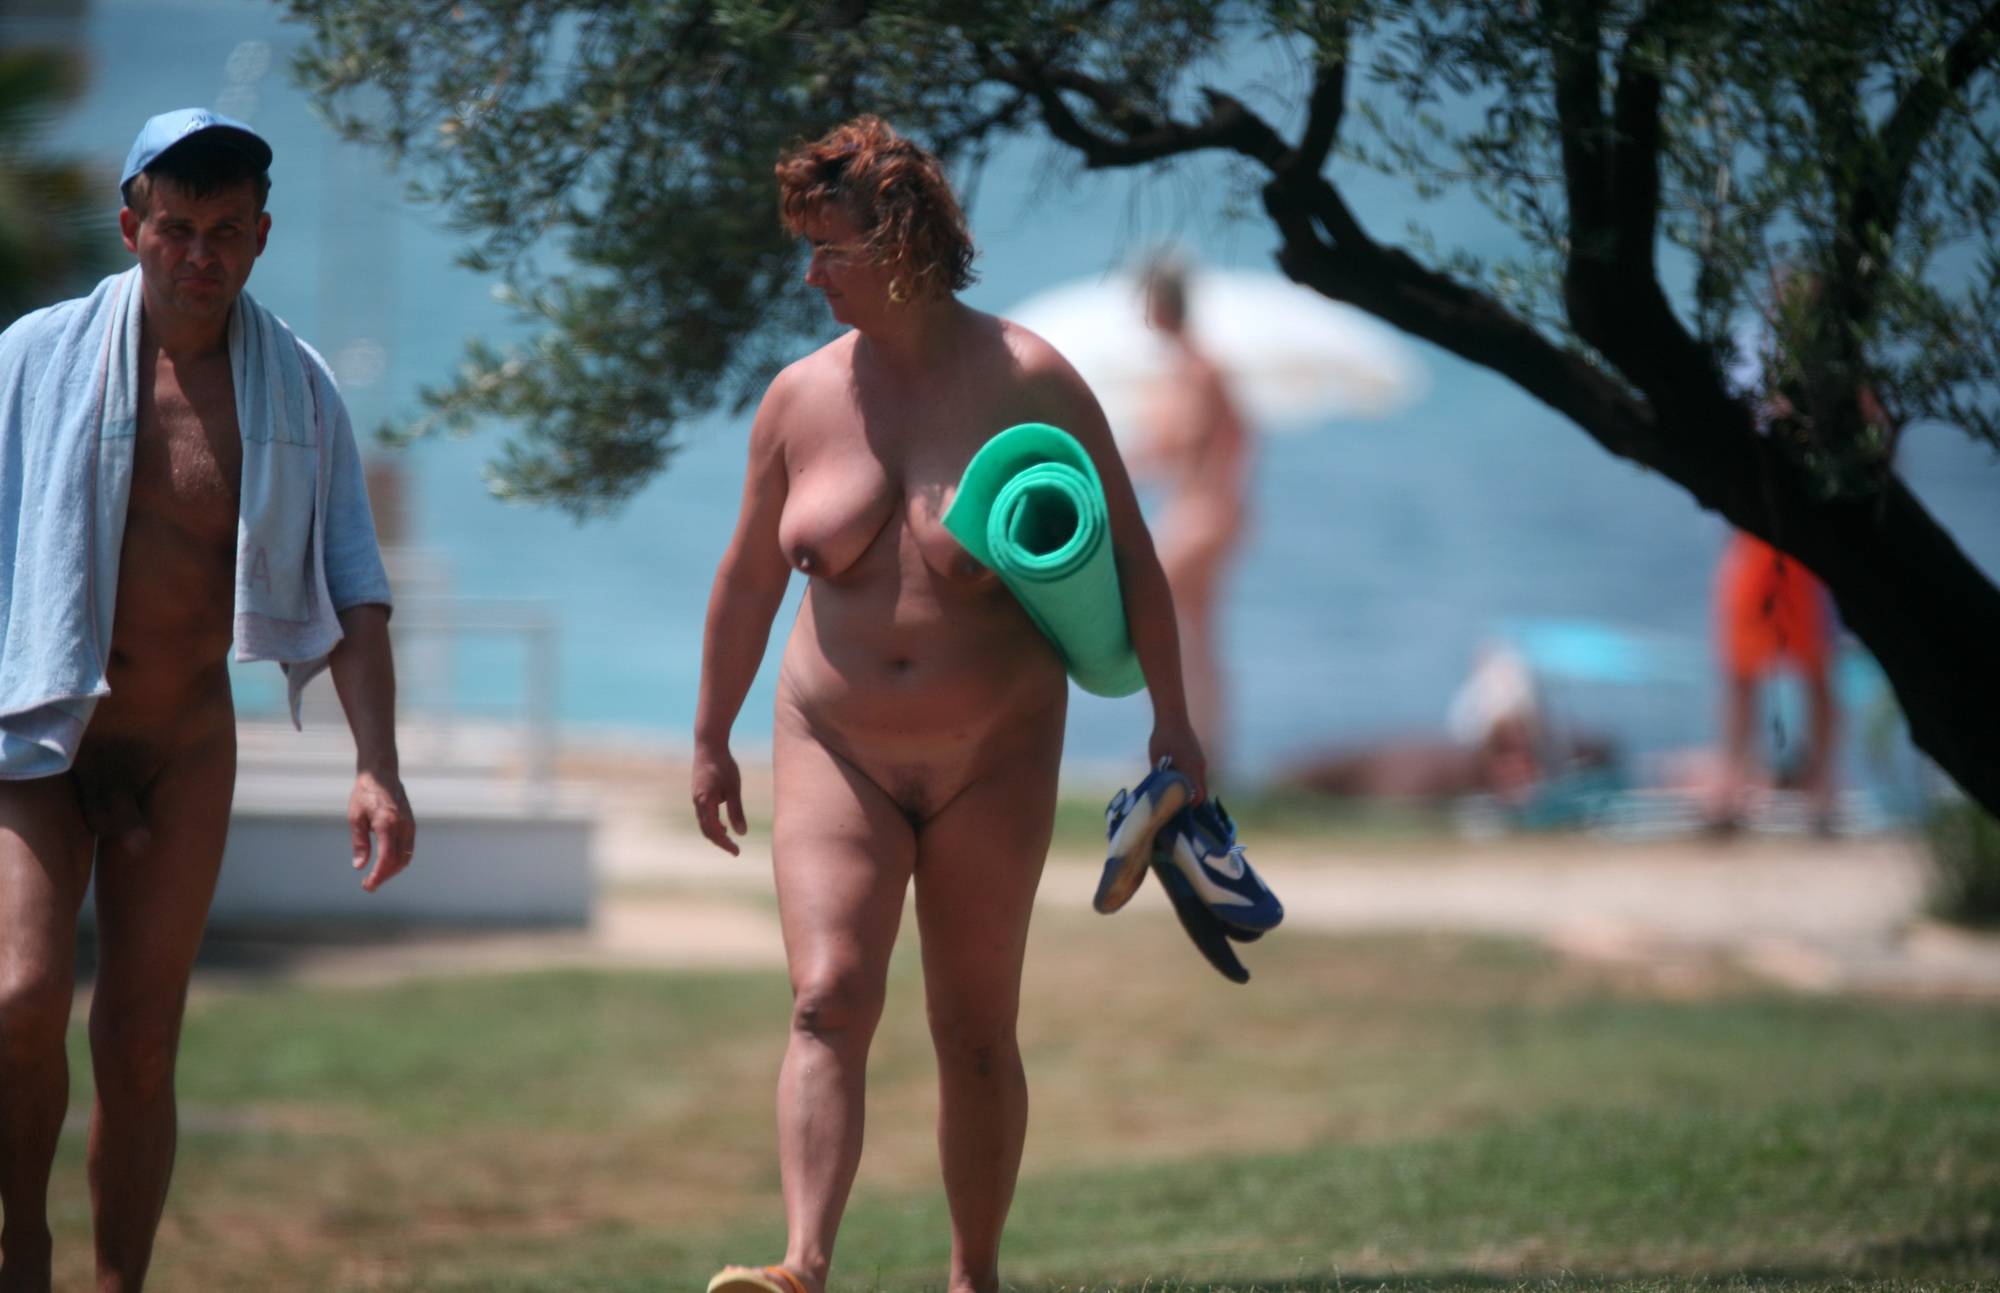 Nudist Pics Nude Park Walks Captured - 1